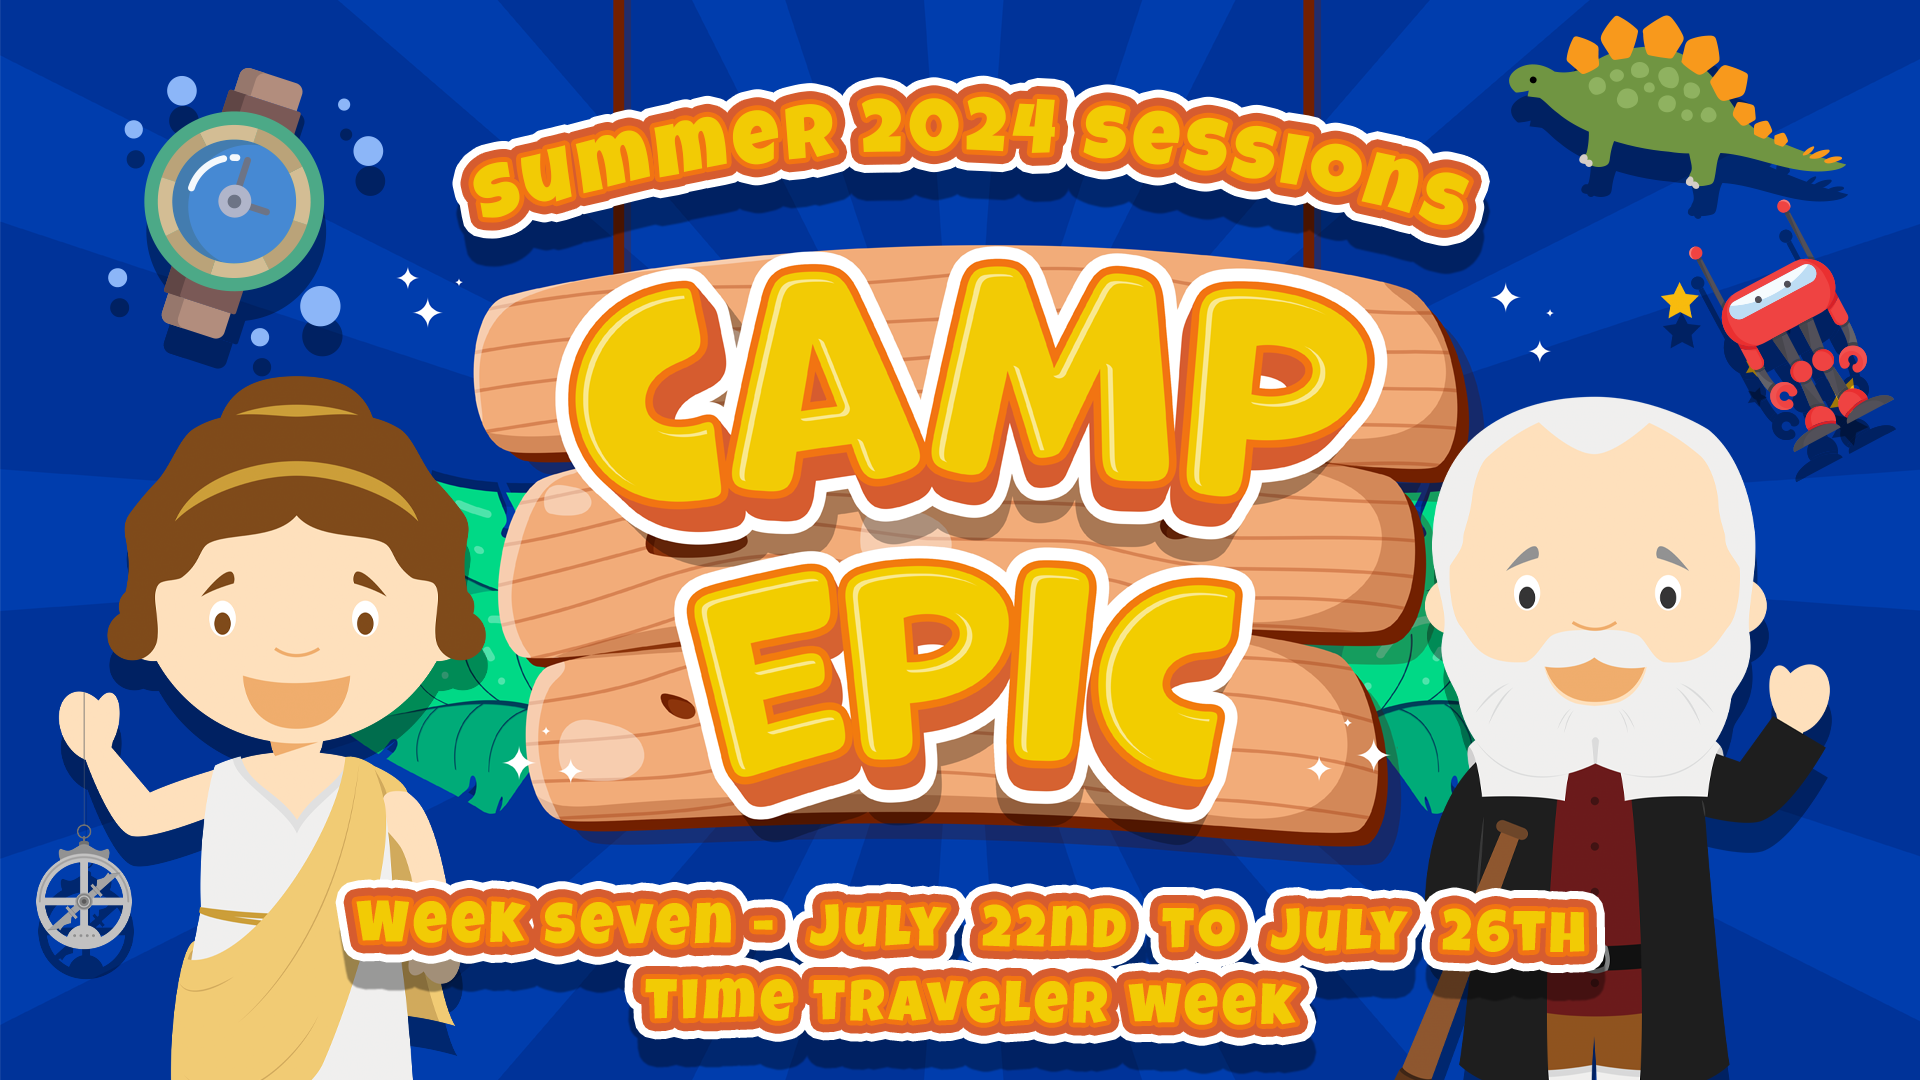 Camp Epic Week 7